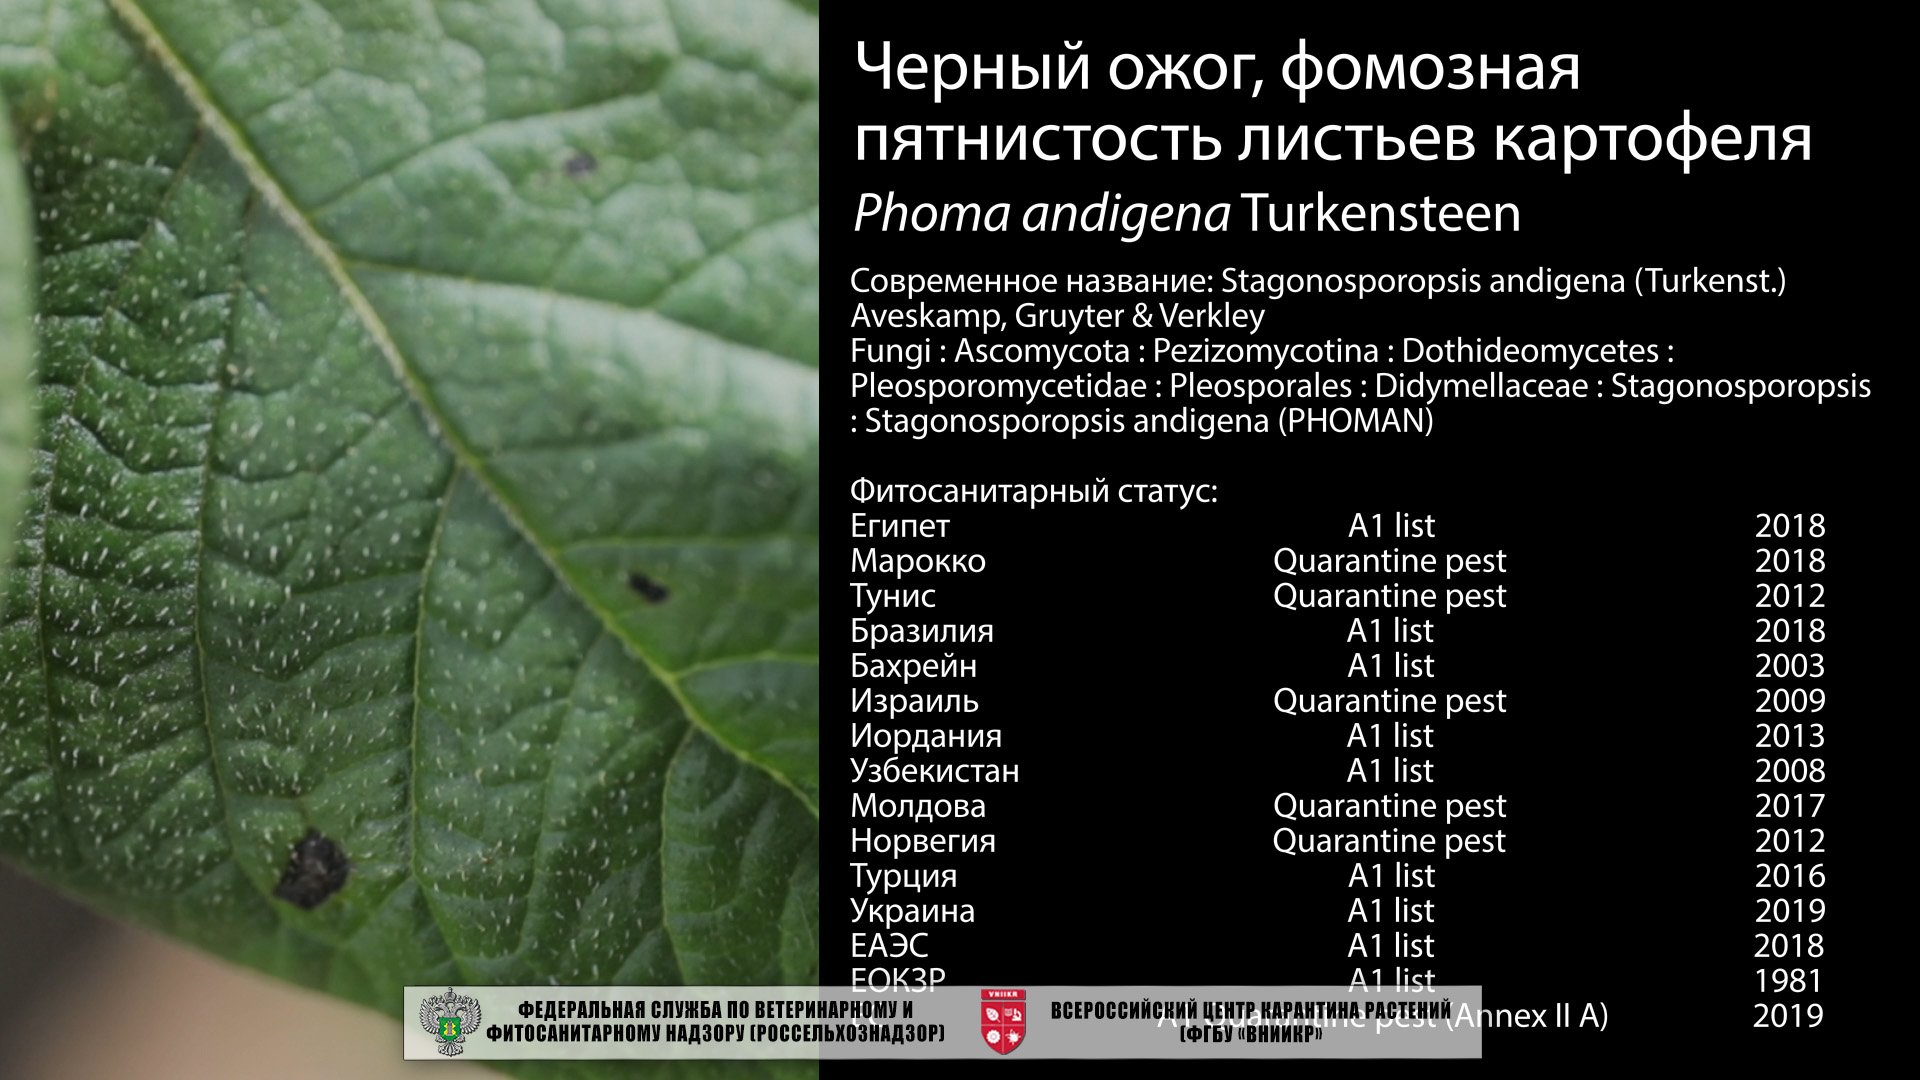 Черный ожог, фомозная пятнистость листьев картофеля (Phoma andigena Turkensteen)